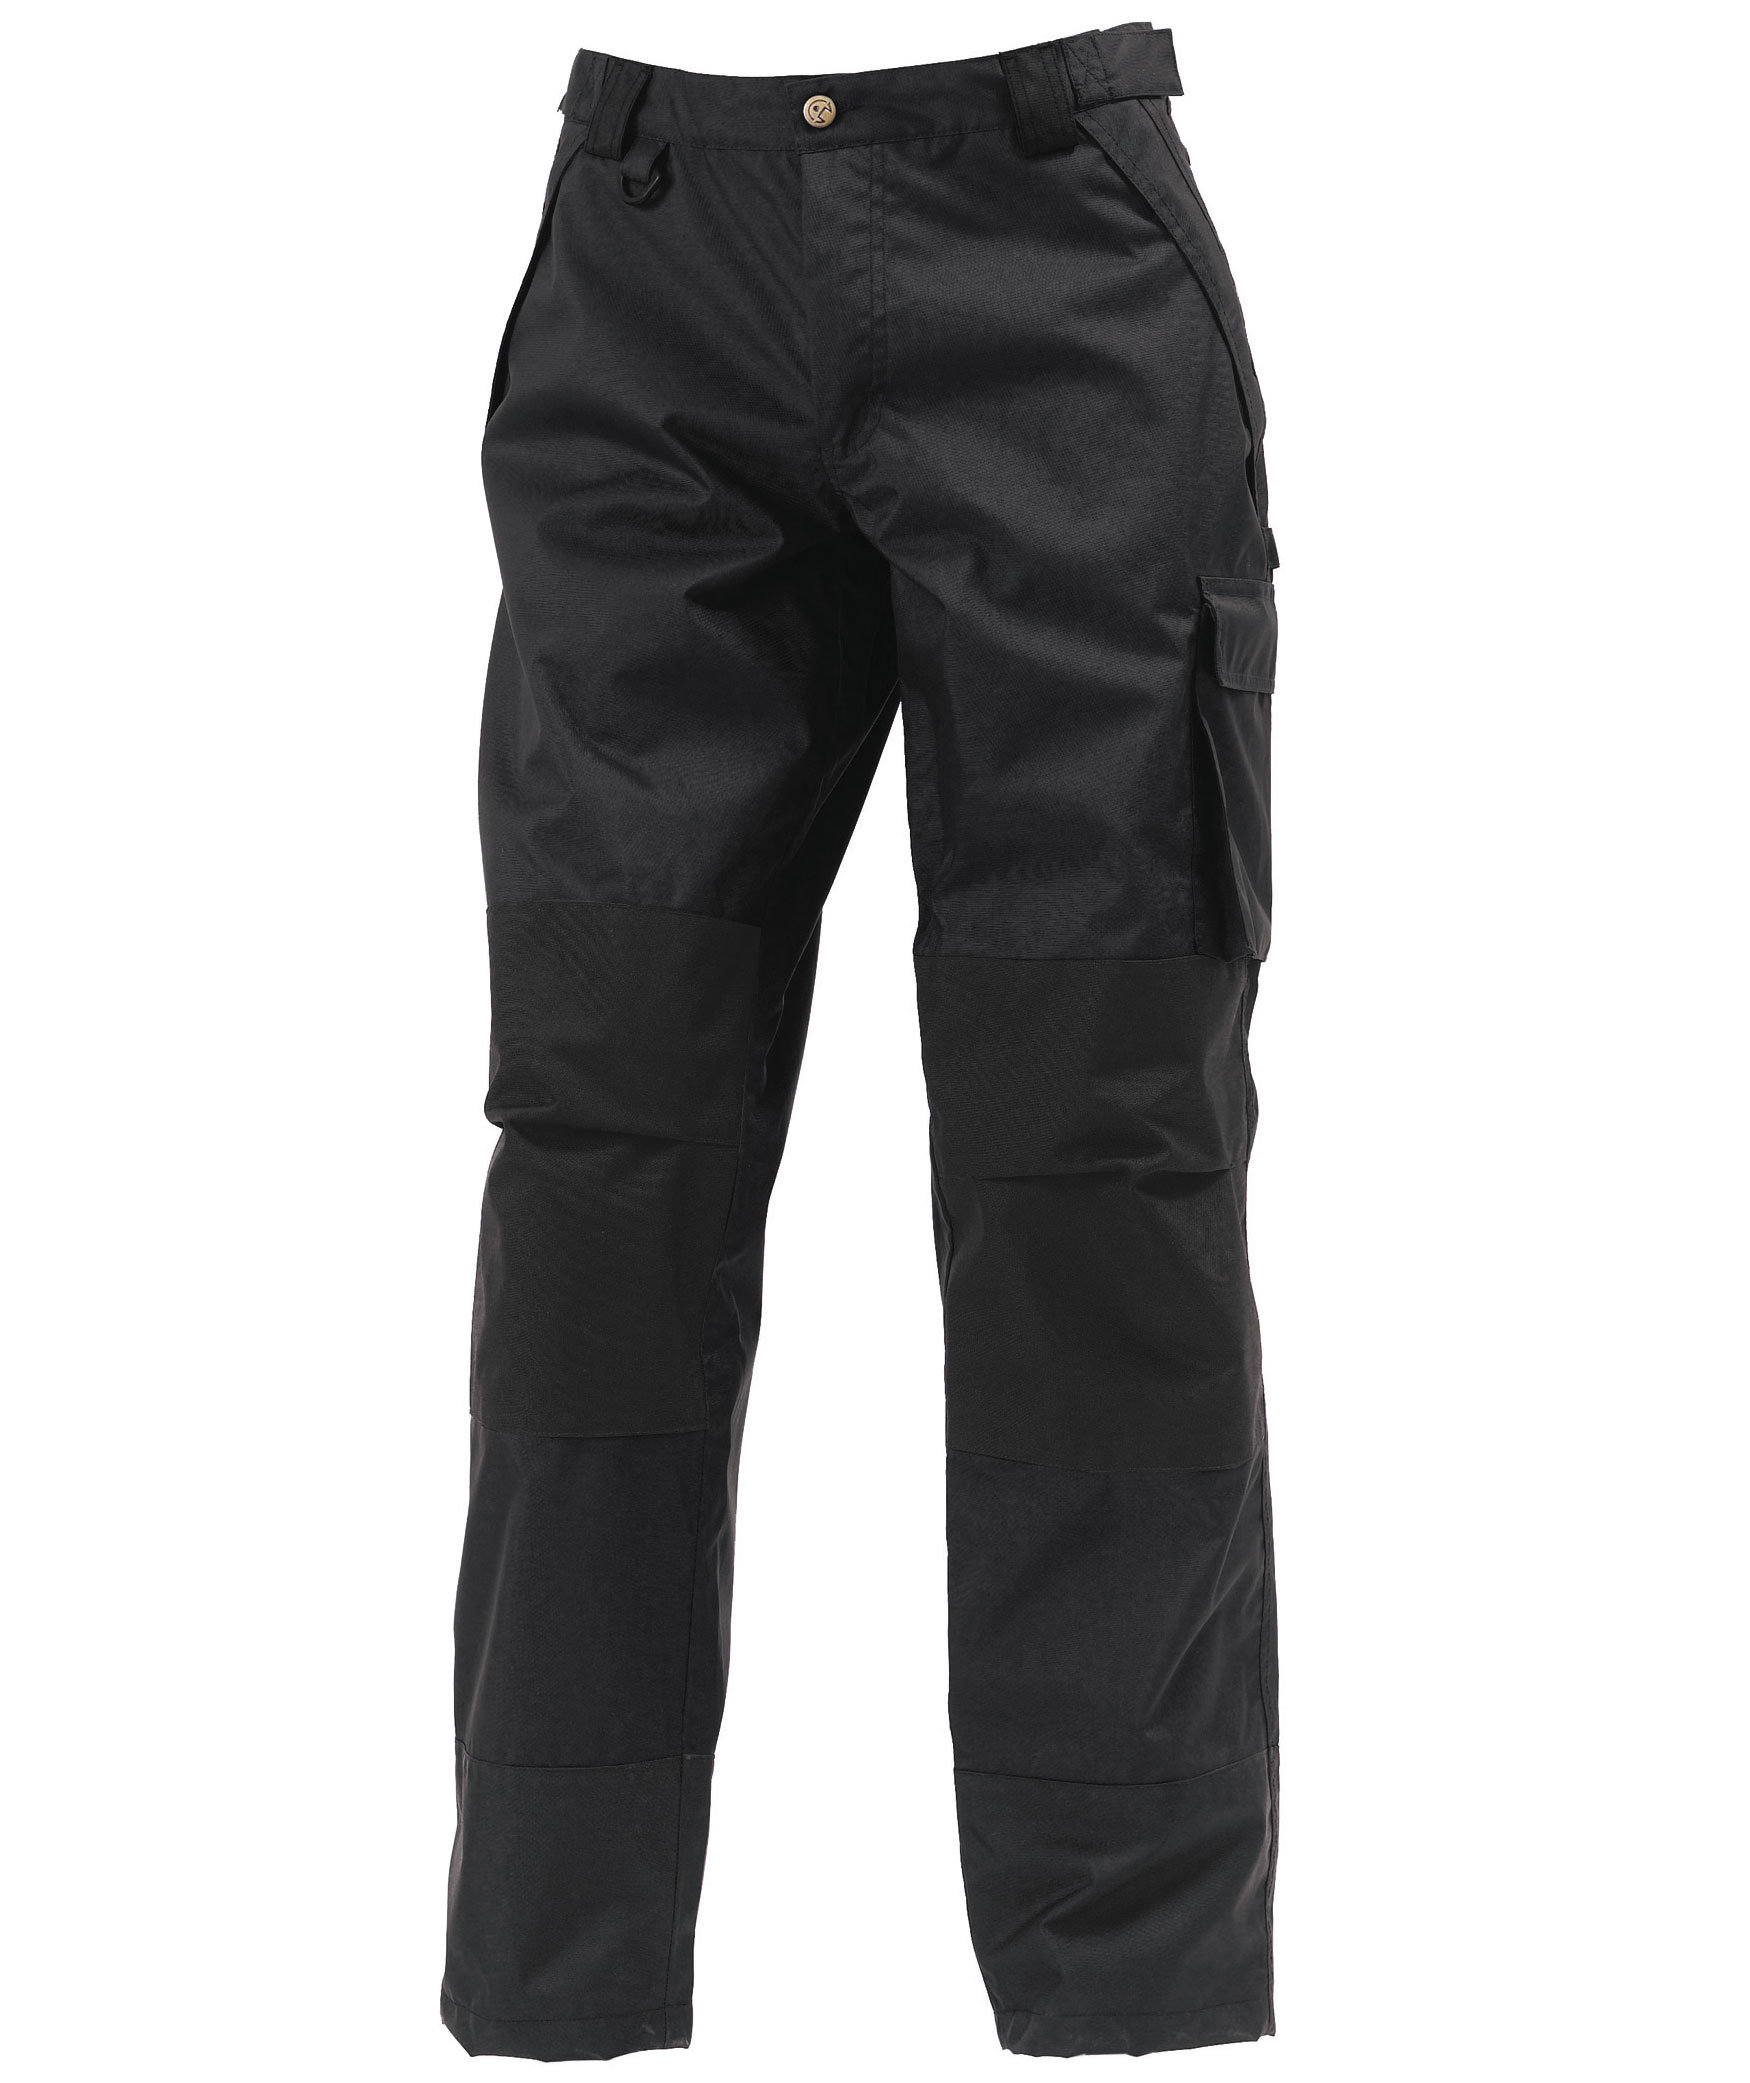 DK Herren Cargo Combat Arbeitshose Zipper schwarz grau Navy Knie Pad Taschen 